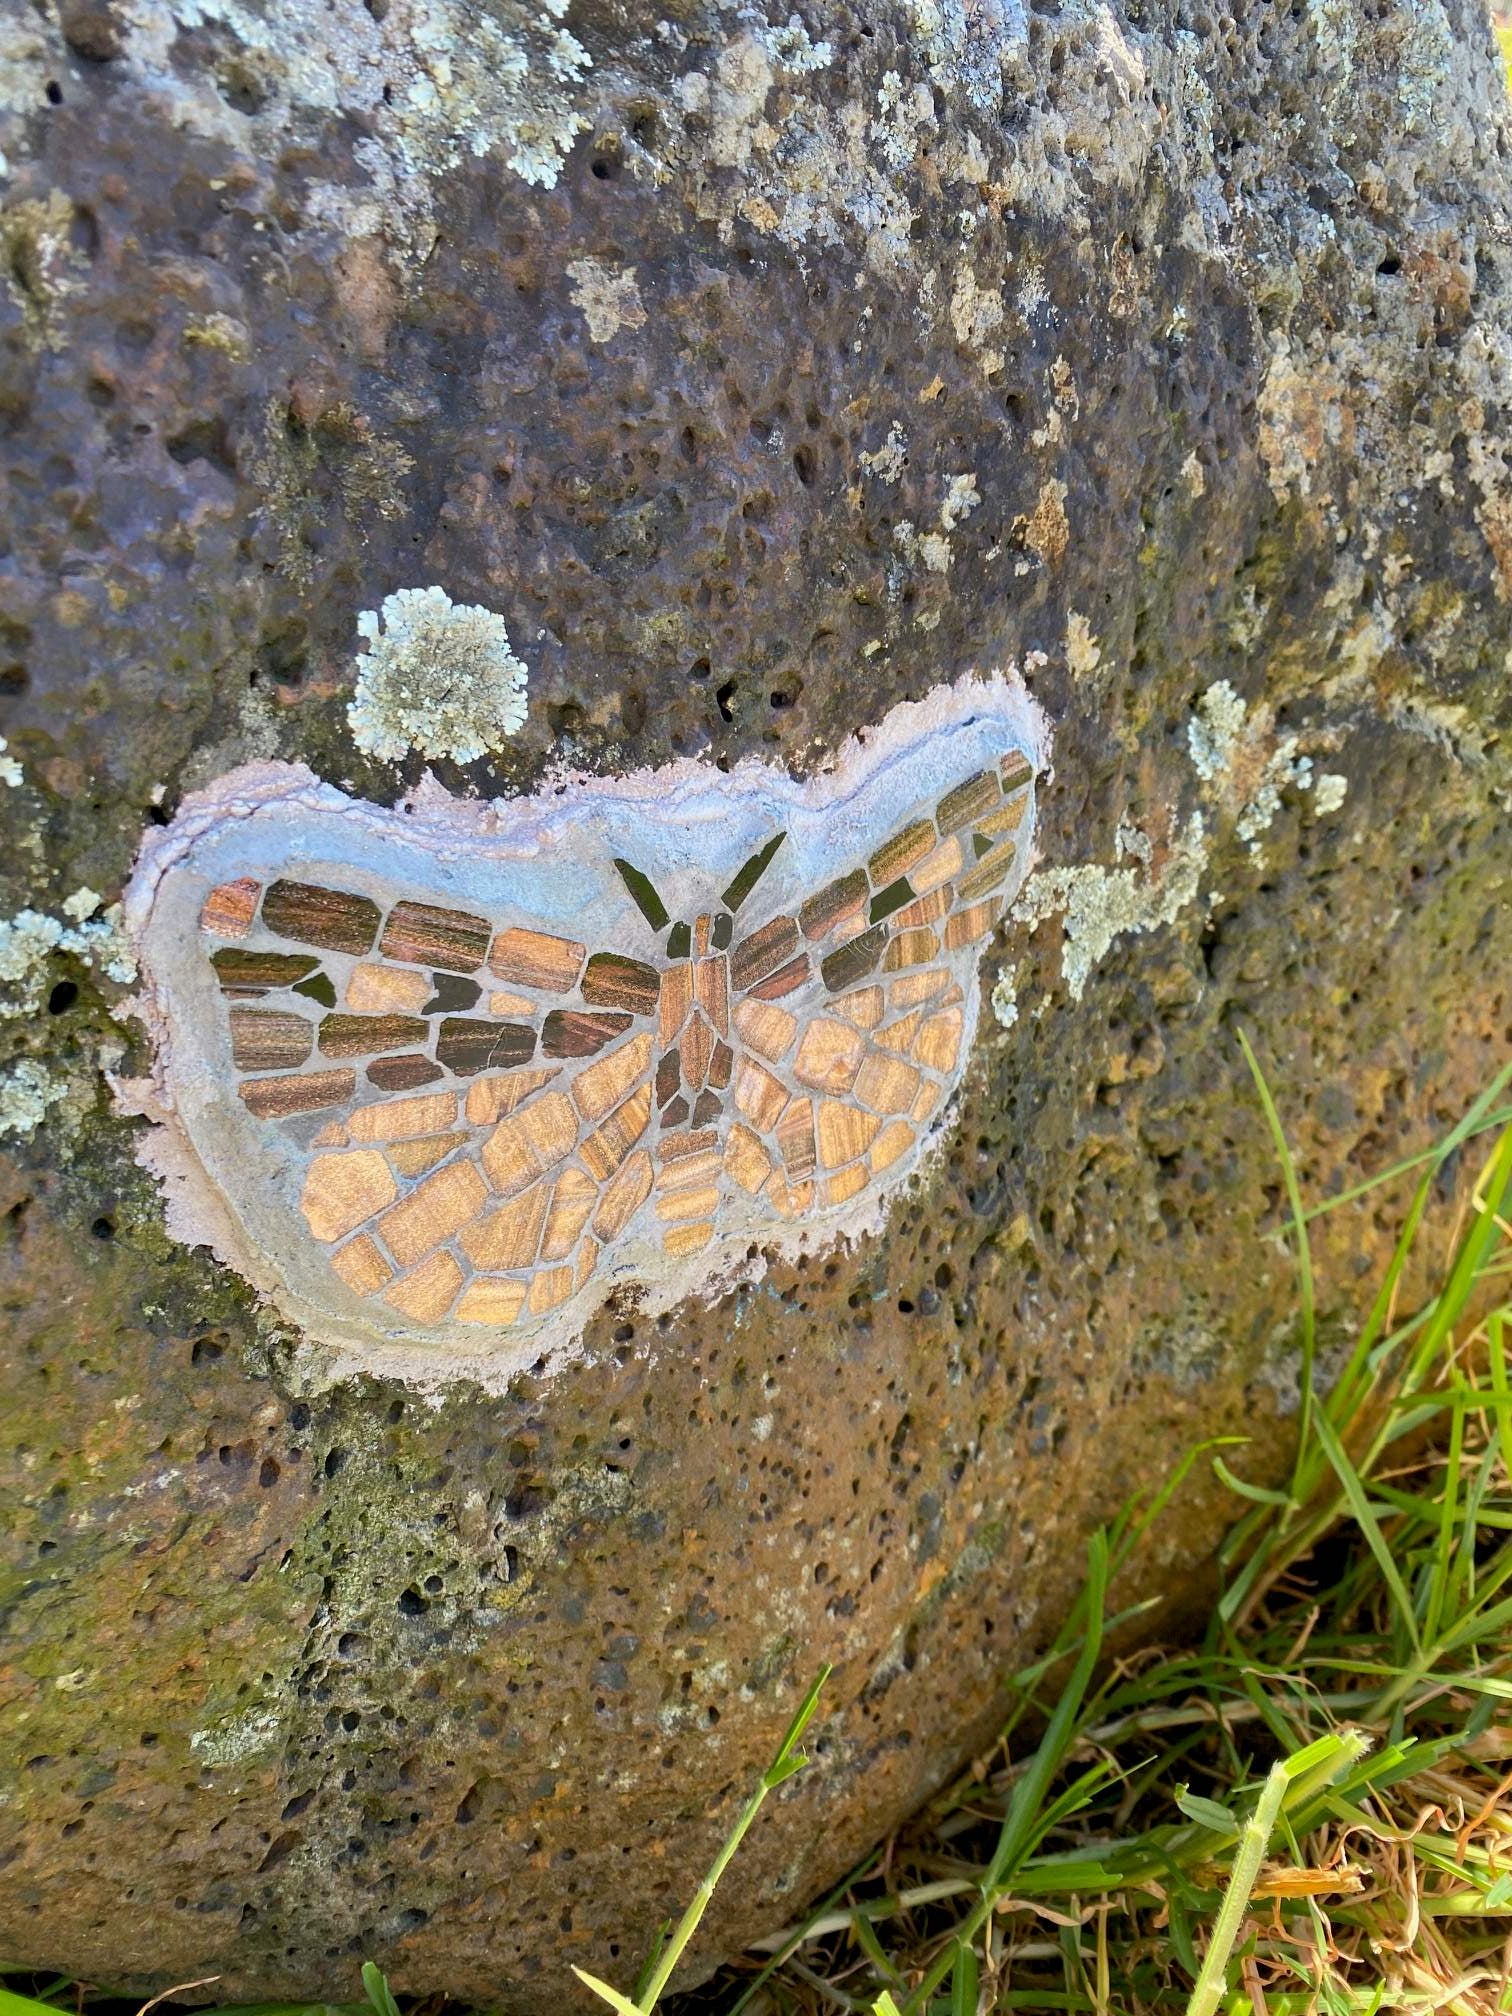 Bogong Moth mosaic on Merri Creek